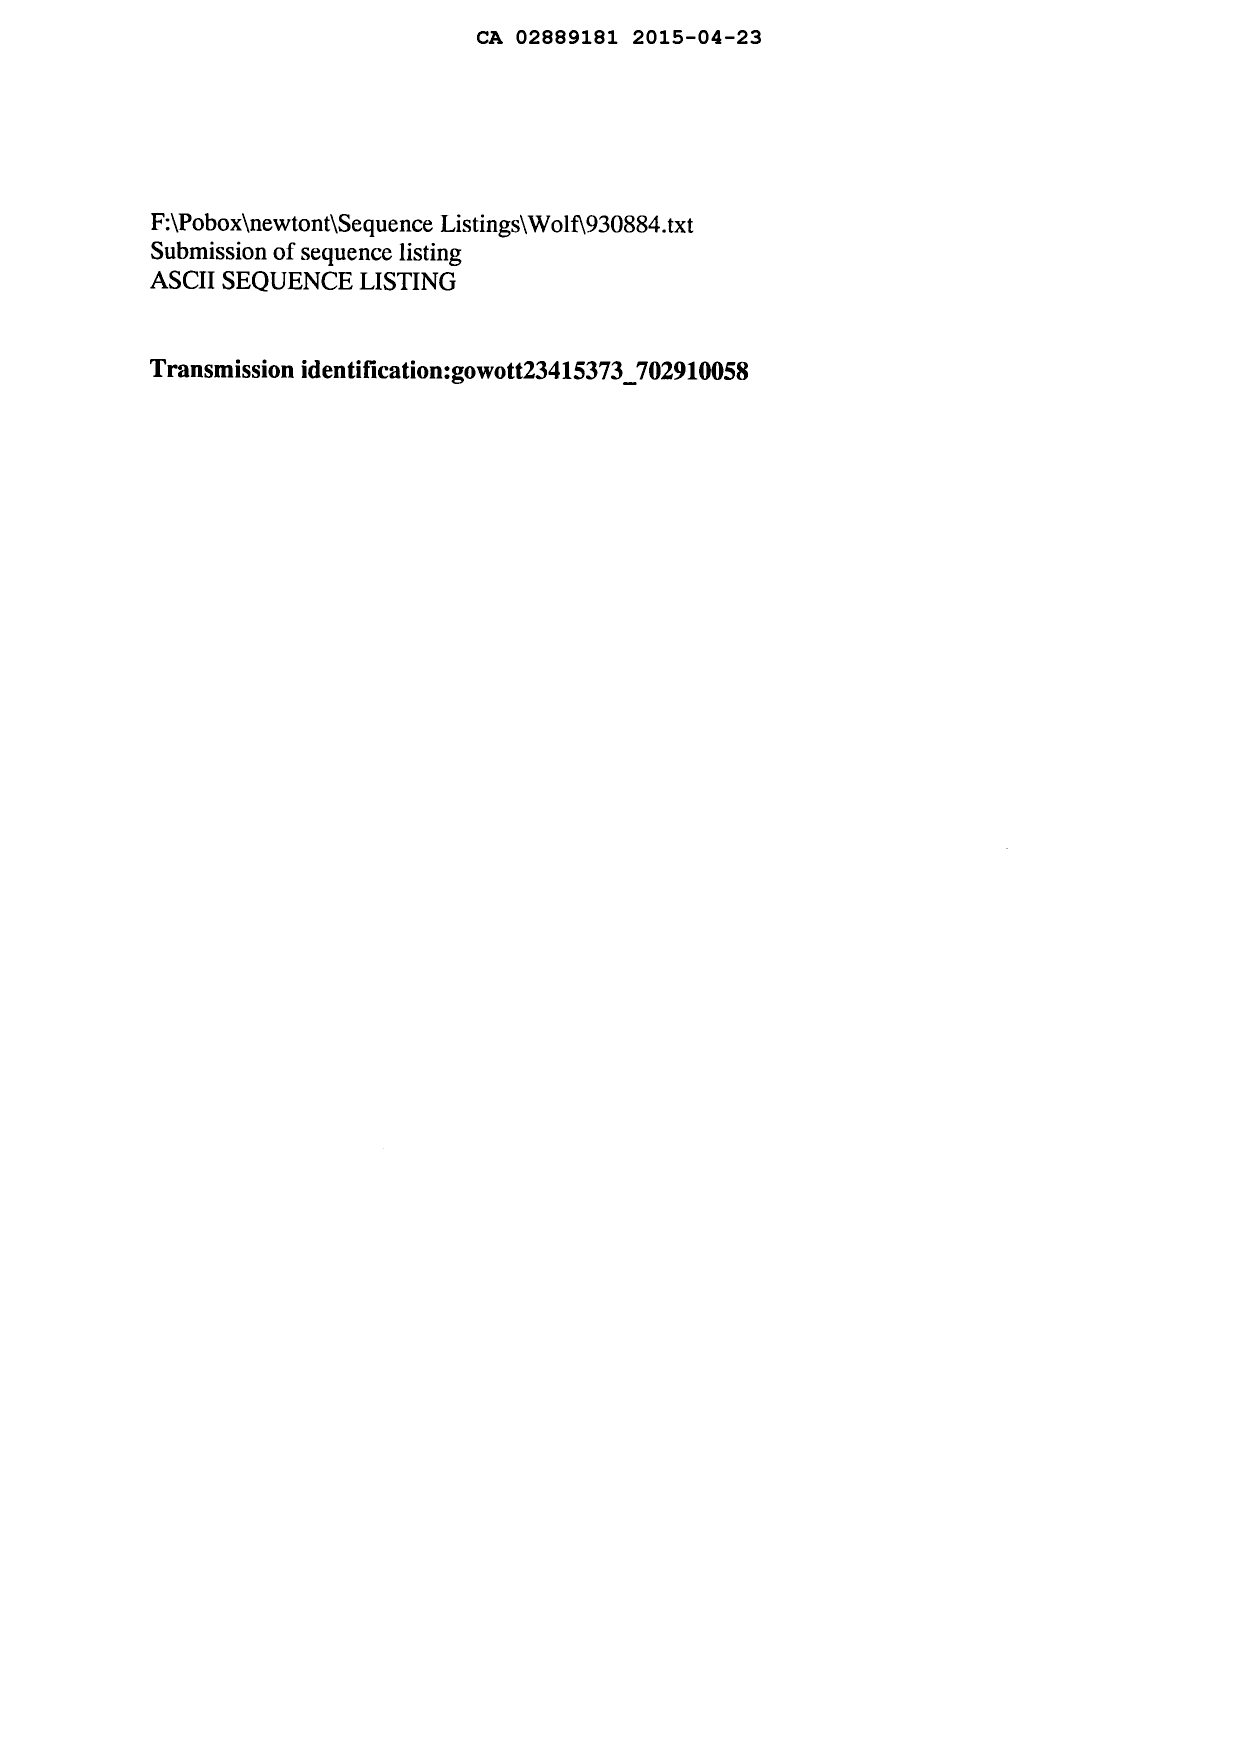 Document de brevet canadien 2889181. Poursuite-Amendment 20141223. Image 4 de 4